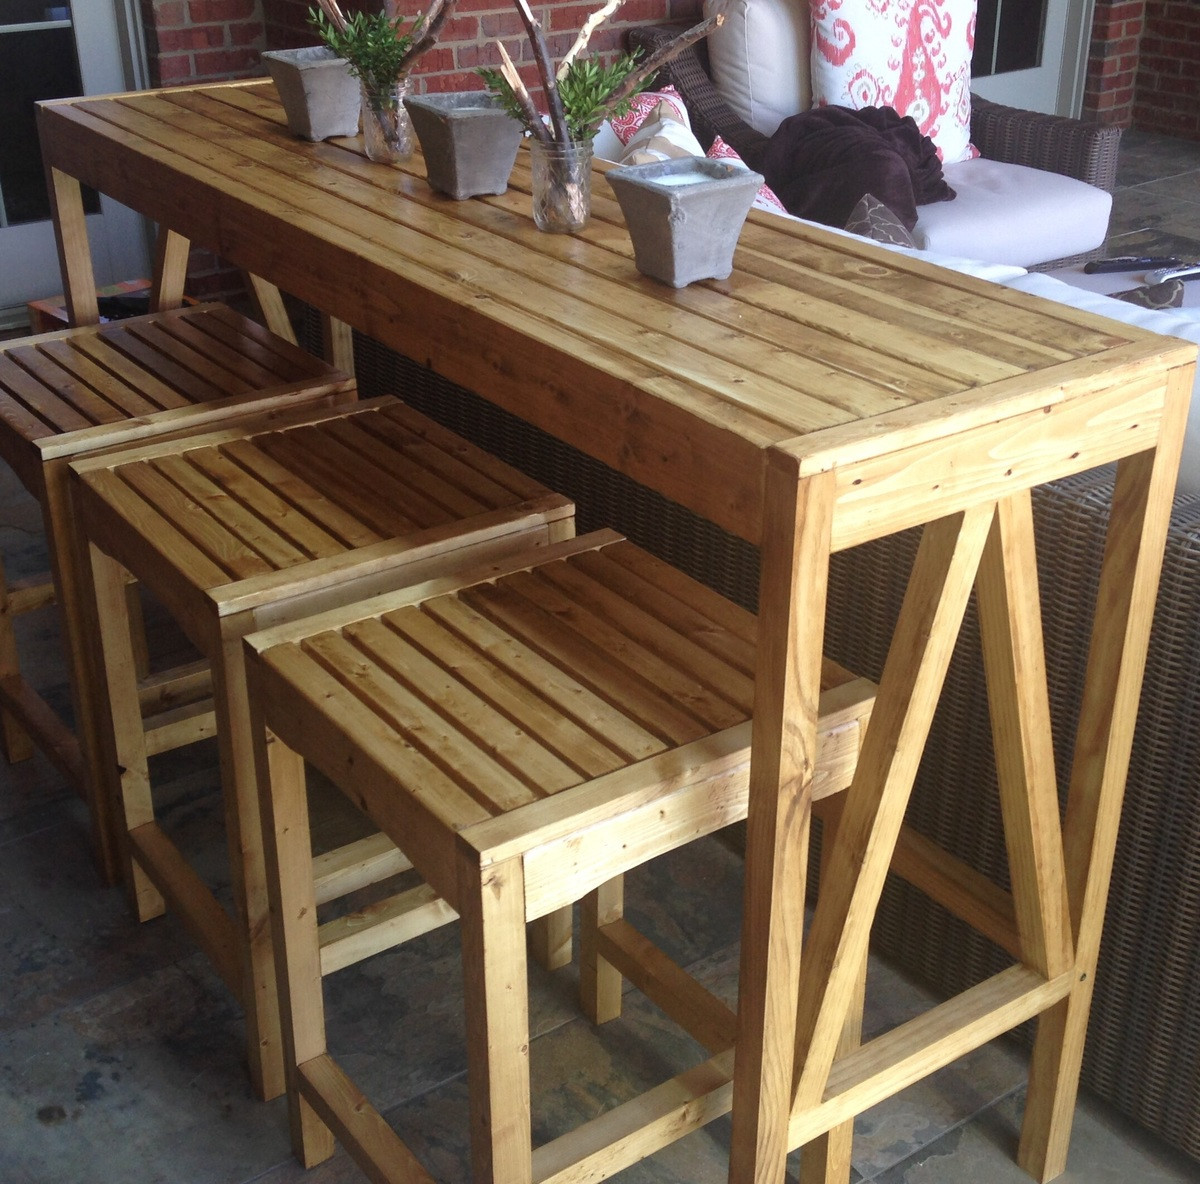 DIY Outdoor Bar Table
 Ana White